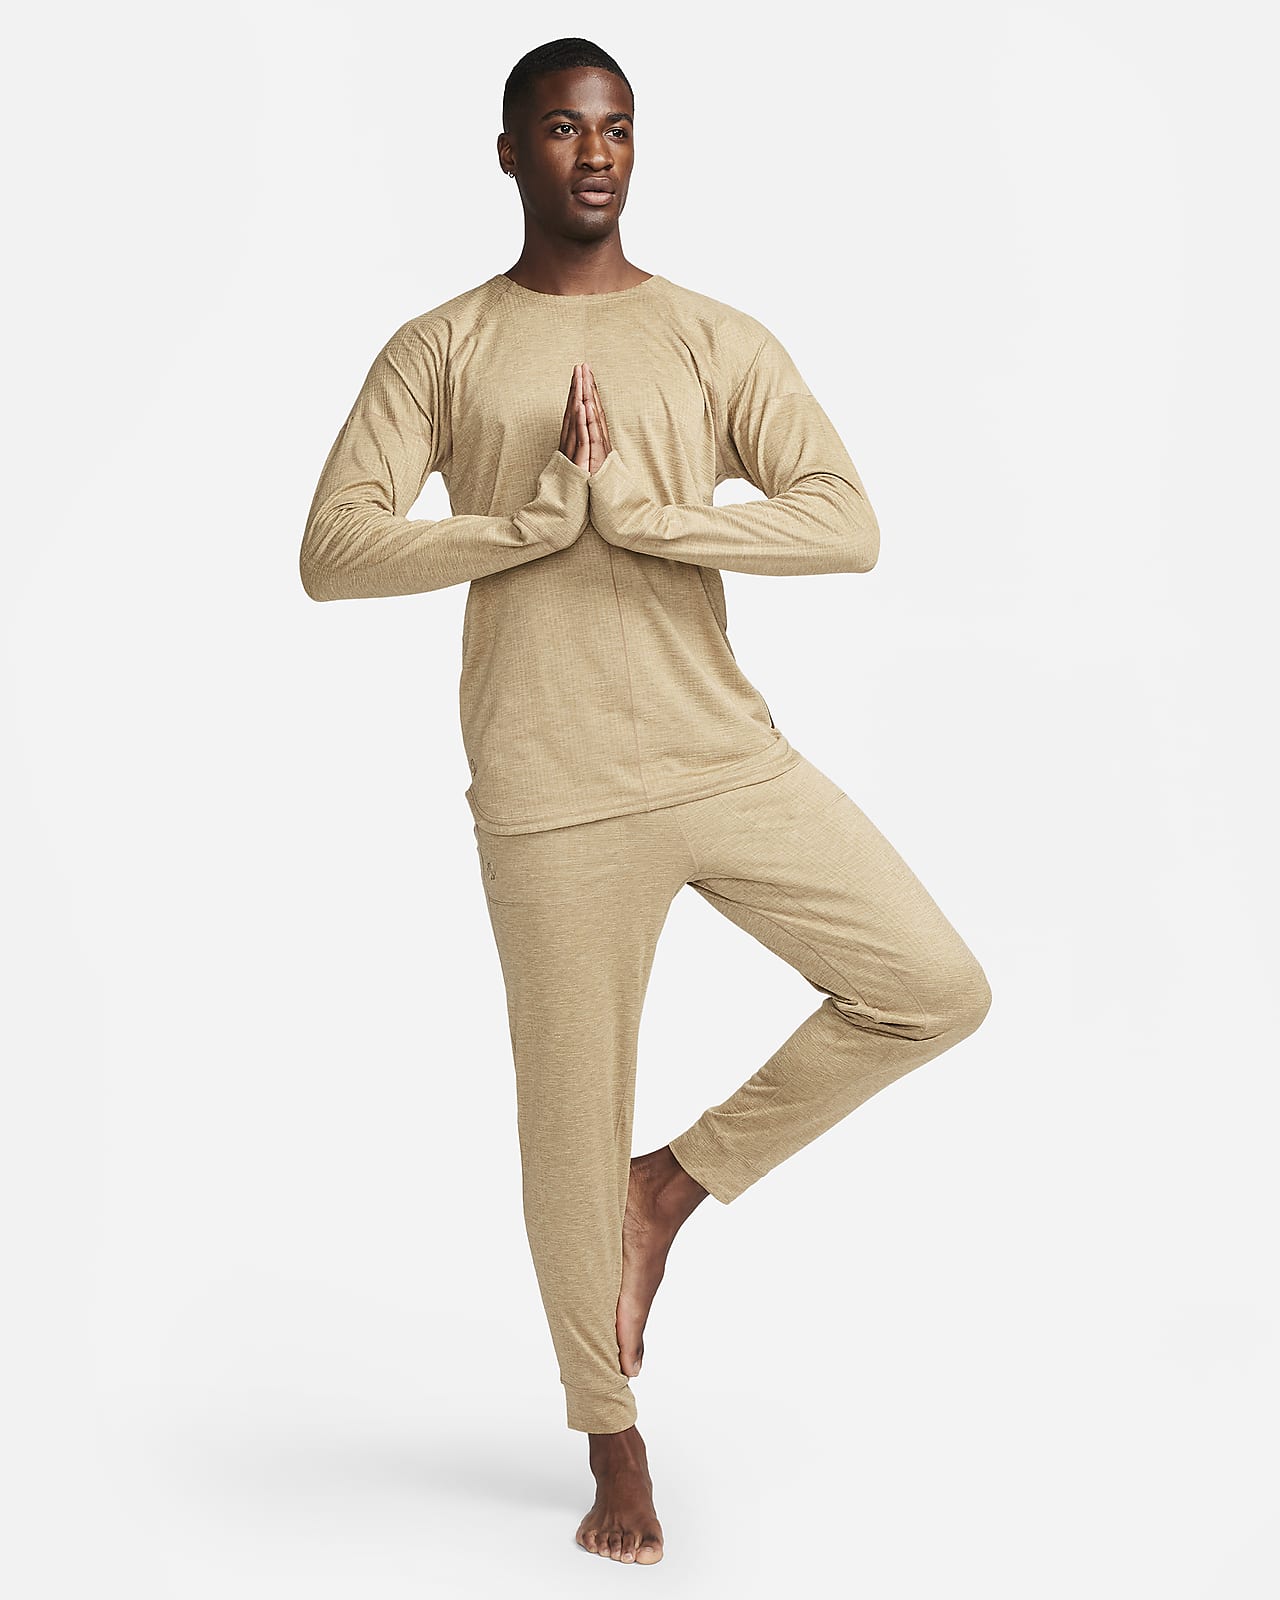 Spodnie Nike Yoga Dri-FIT W Czarne (DM7037-010) - Ceny i opinie